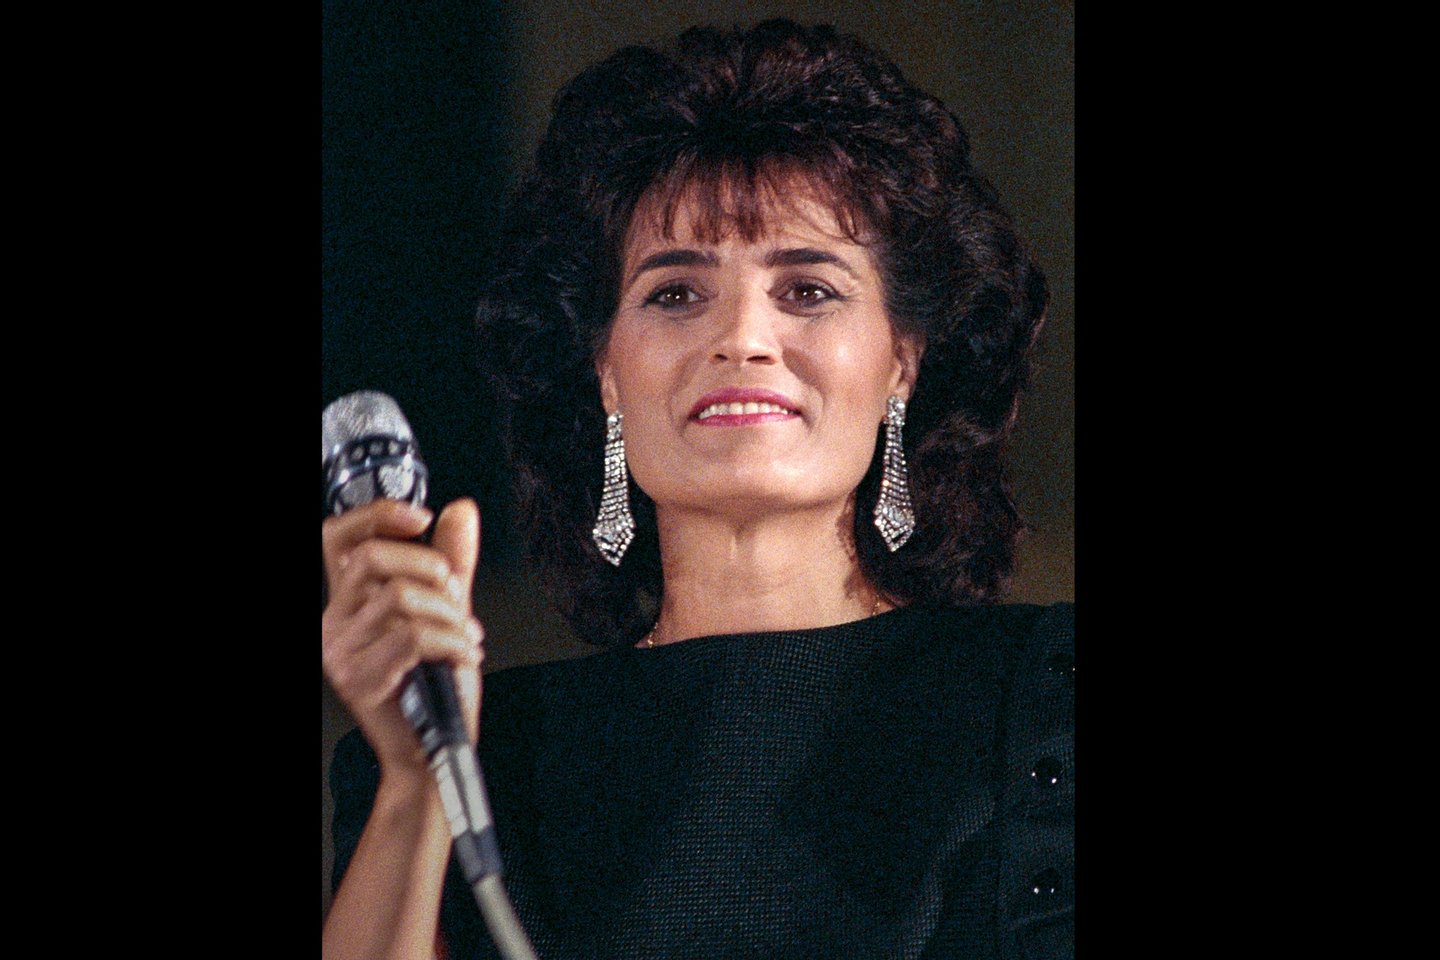 Foto de arquivo de janeiro de 1985 da cantora Linda de Suza, intérprete de êxitos como “Um Português”, que morreu hoje, aos 74 anos, 28 de dezembro de 2022, ANTÓNIO COTRIM / LUSA